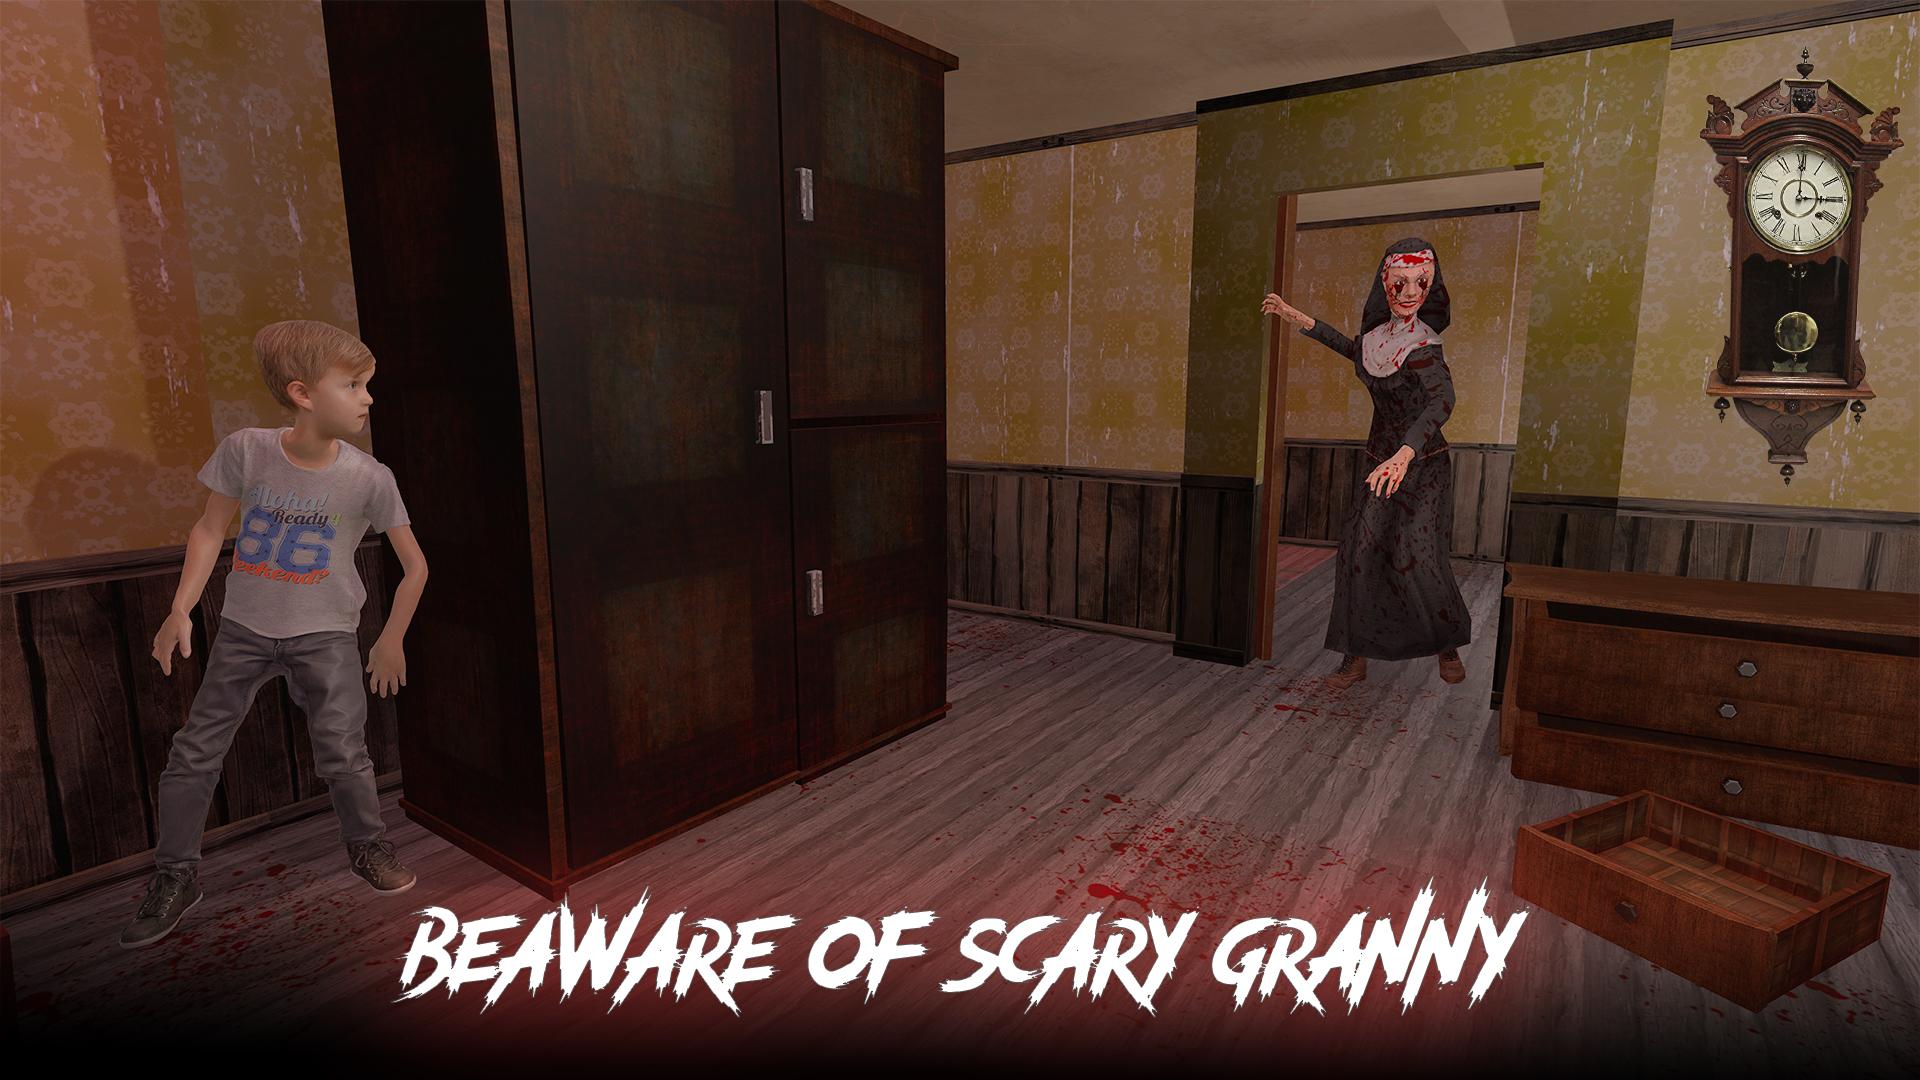 Scary granny Horror 2 Mod APK V1.0 (новый мод). Прохождение Scary granny -Hide and seek. Как убрать гренни из игры